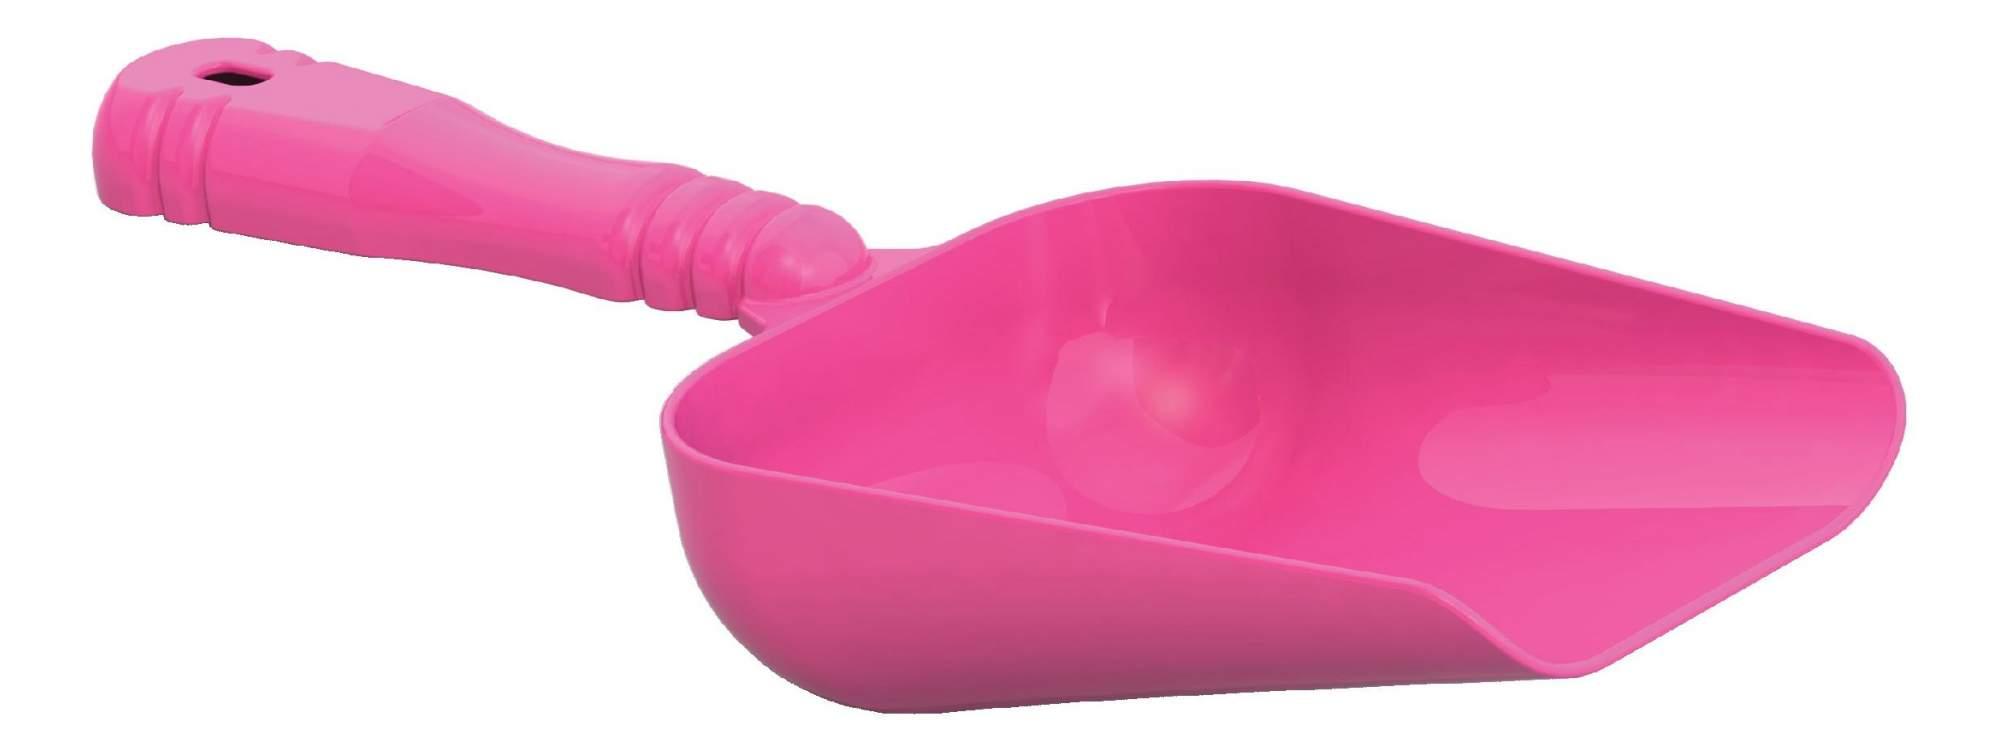 Игрушка Совок 16.5см Розовый  NSToy  - интернет-магазин Близнецы